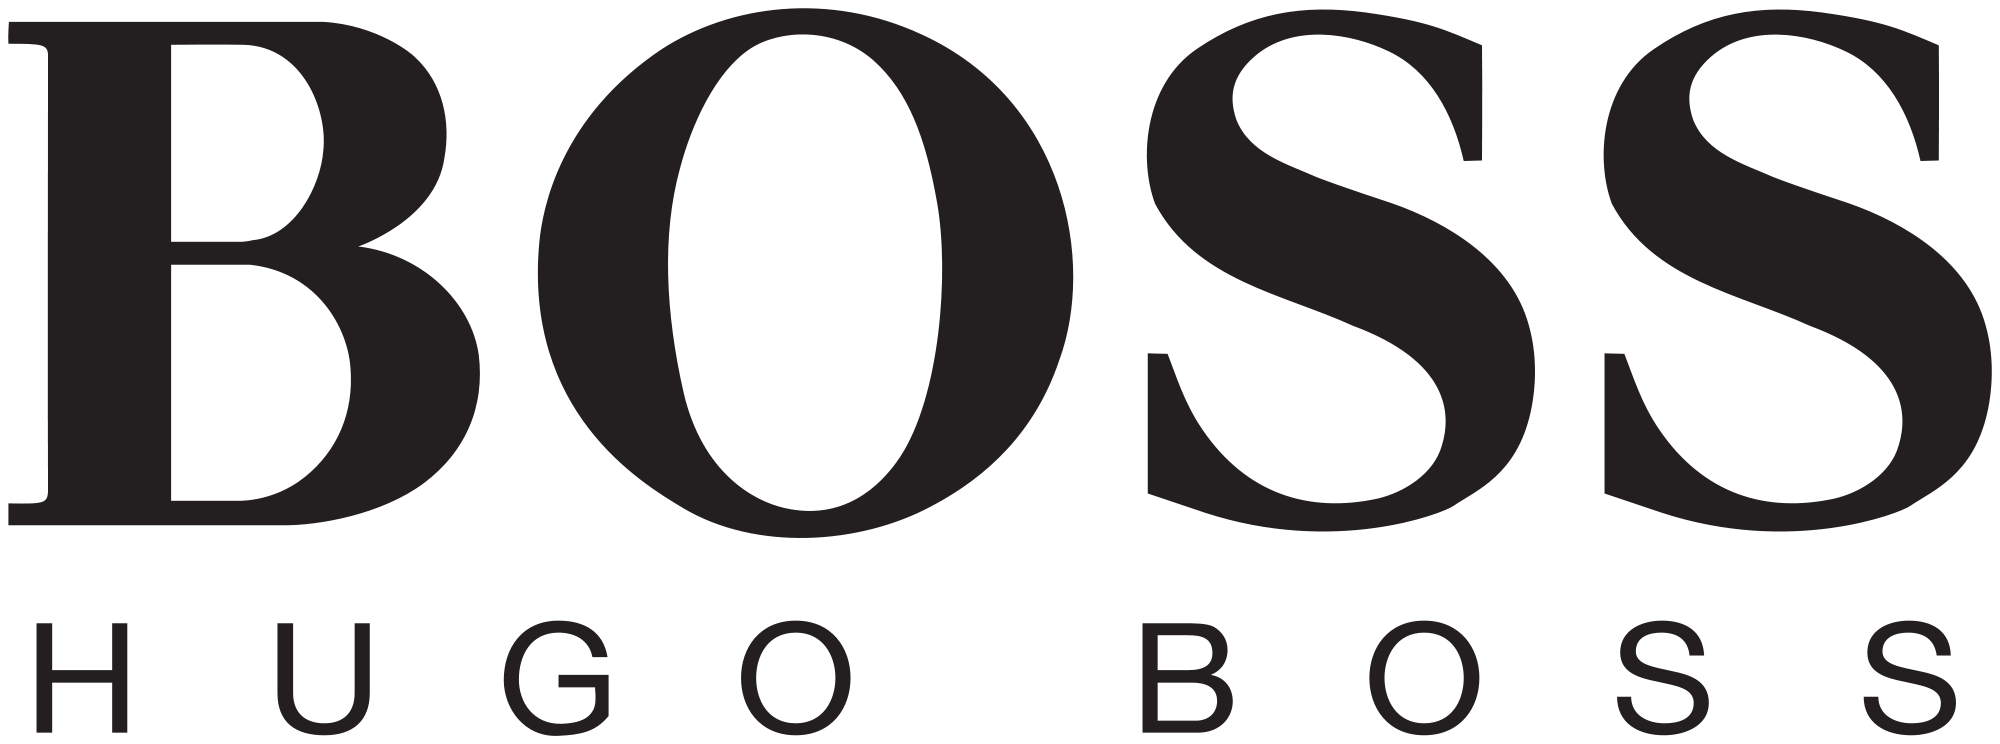 Hugo Boss Logo Transparent Background